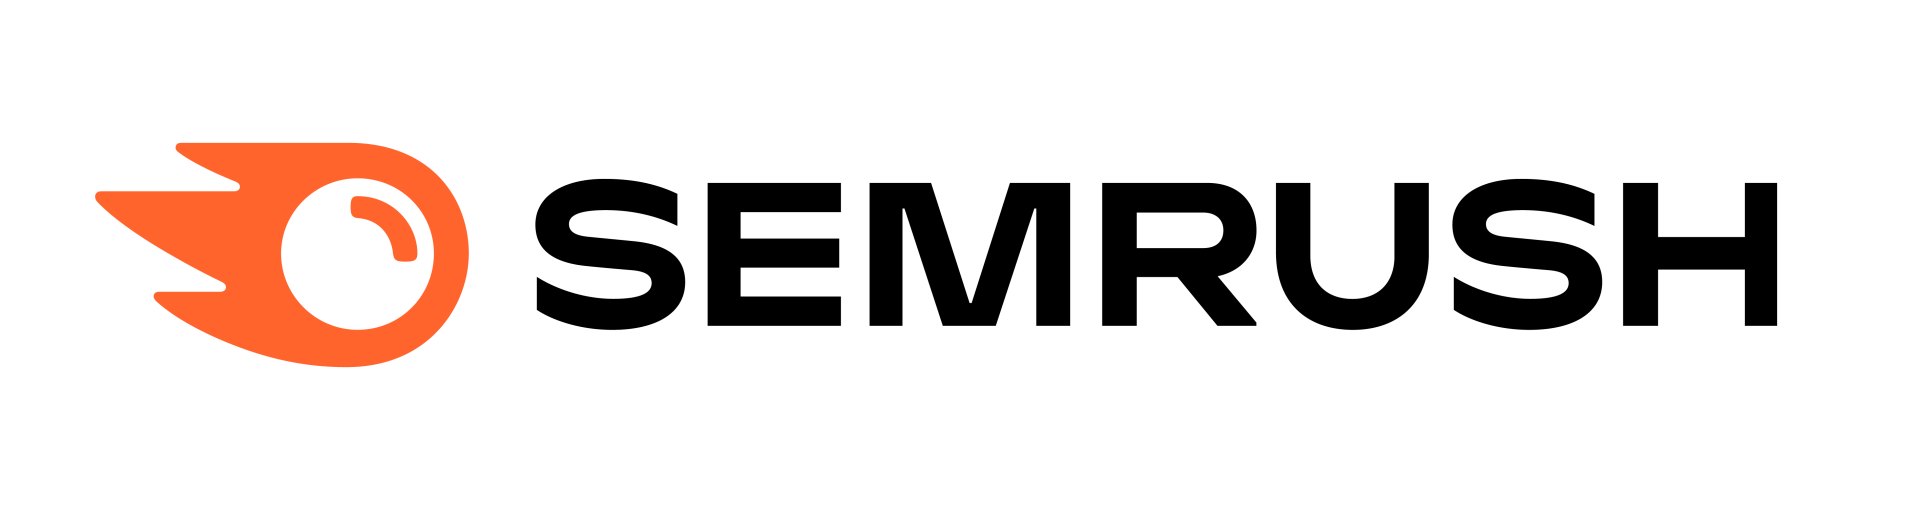 Semrush-logo